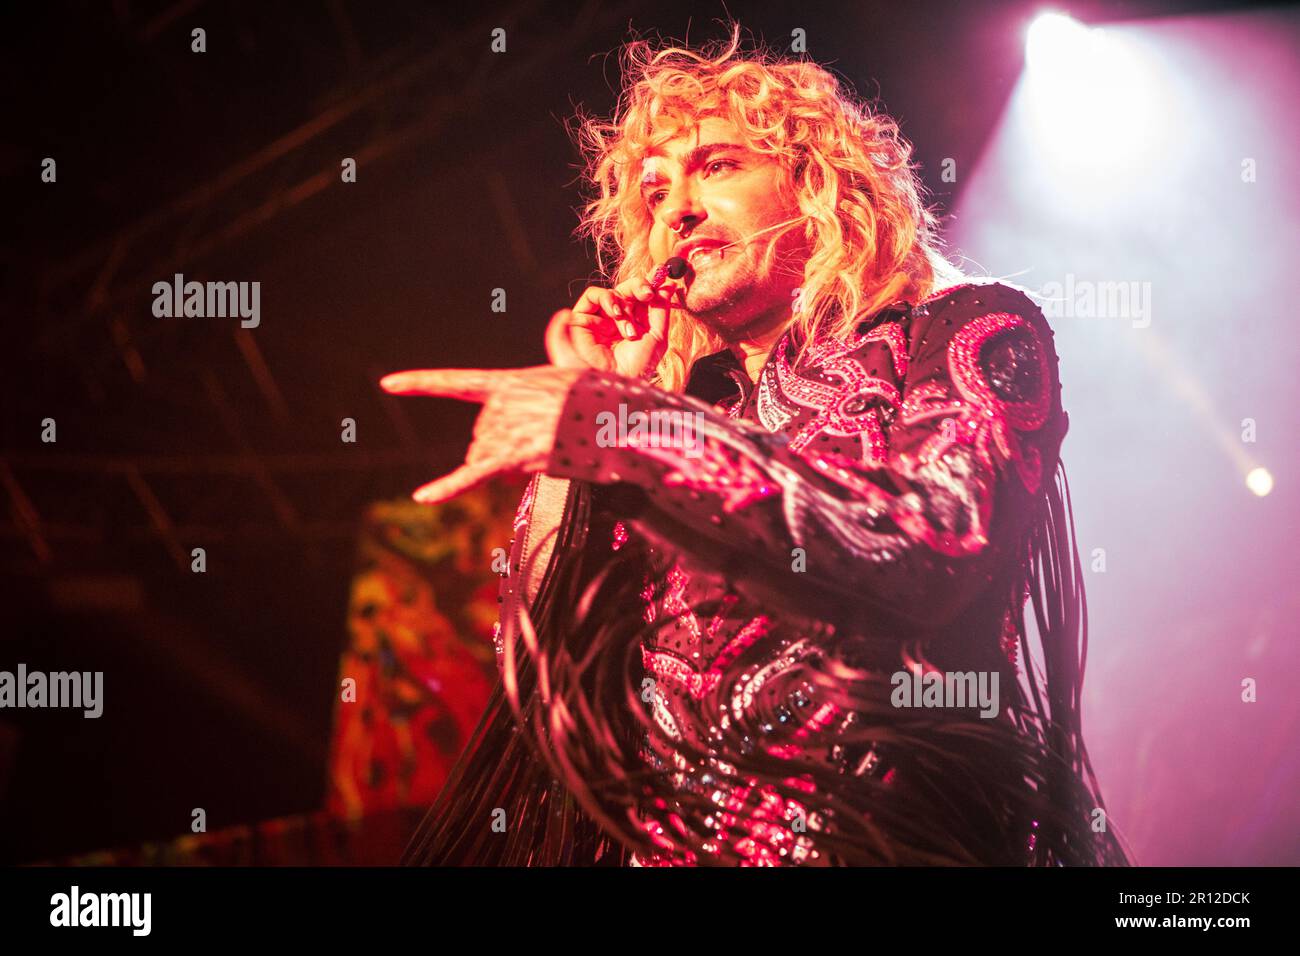 Tokio Hotel in concerto al Fabrique di Milano. Foto di Davide Merli per www.rockon.it Stock Photo